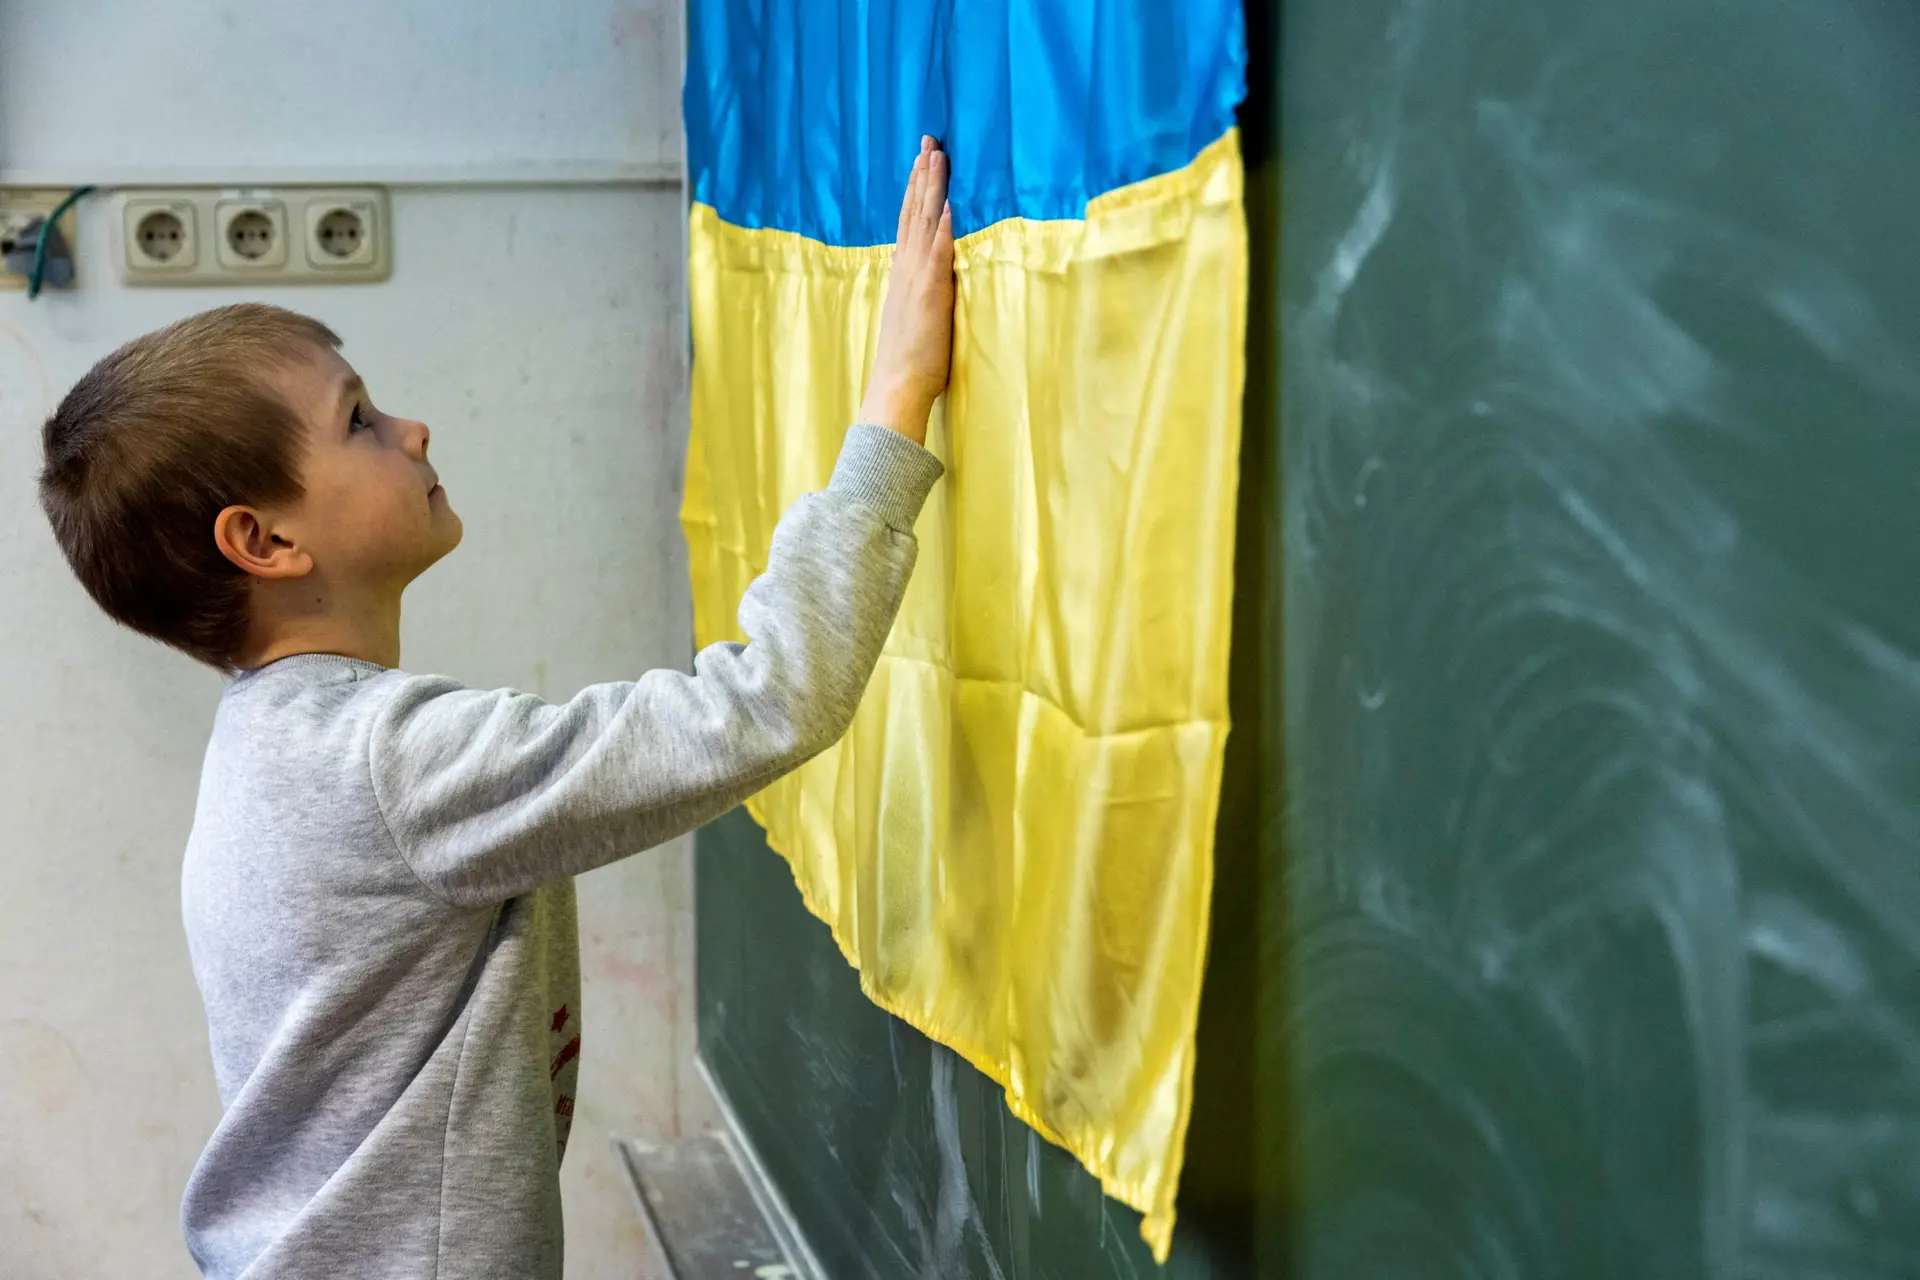 Traços de crianças indefesas de crianças ucranianas em meio a